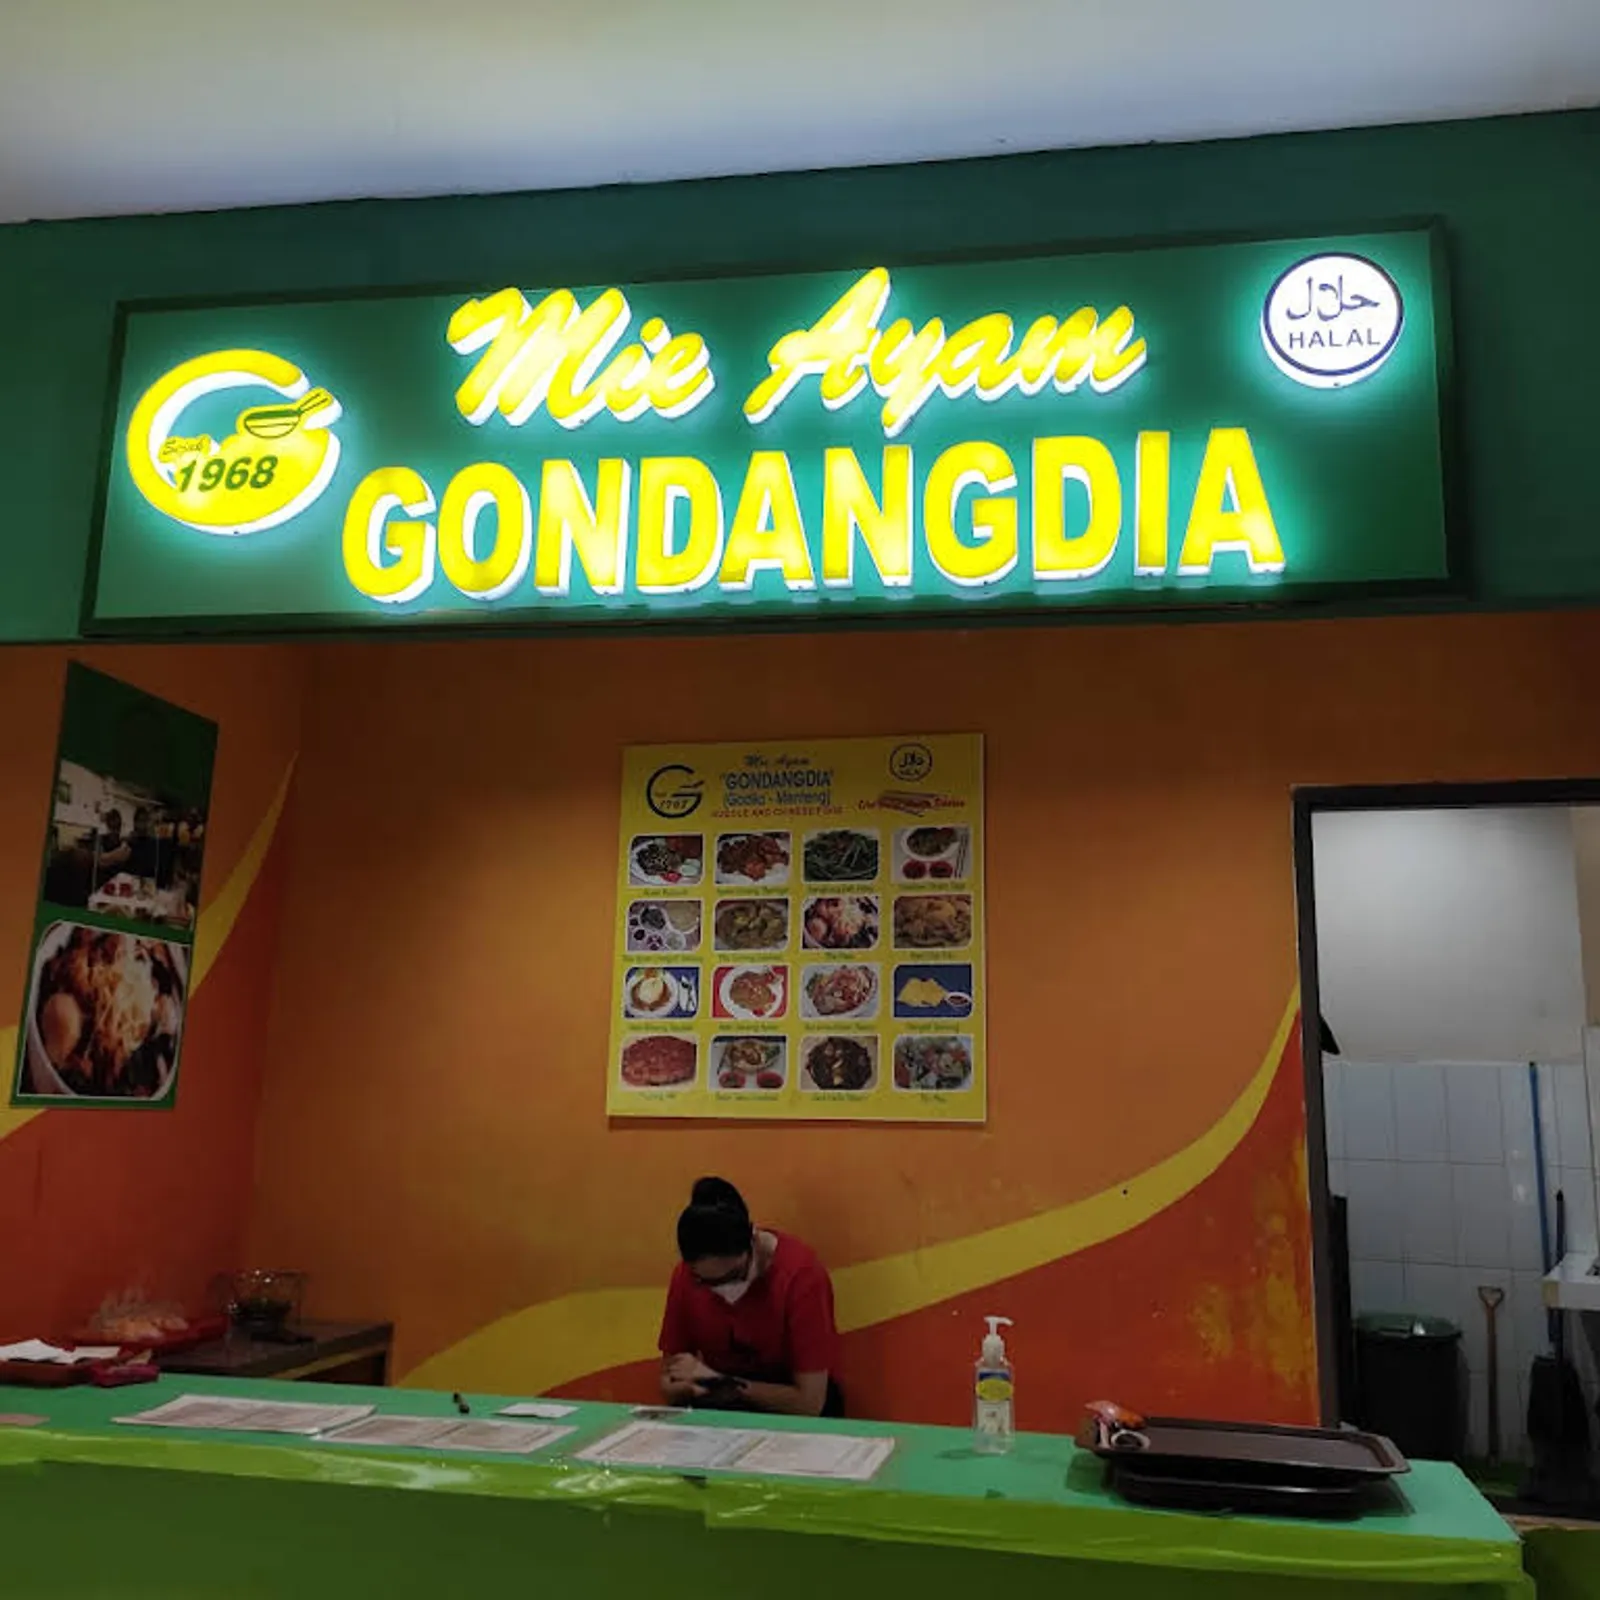 10 Rekomendasi Street Food Murah di Jakarta, Hemat di Tanggal Muda